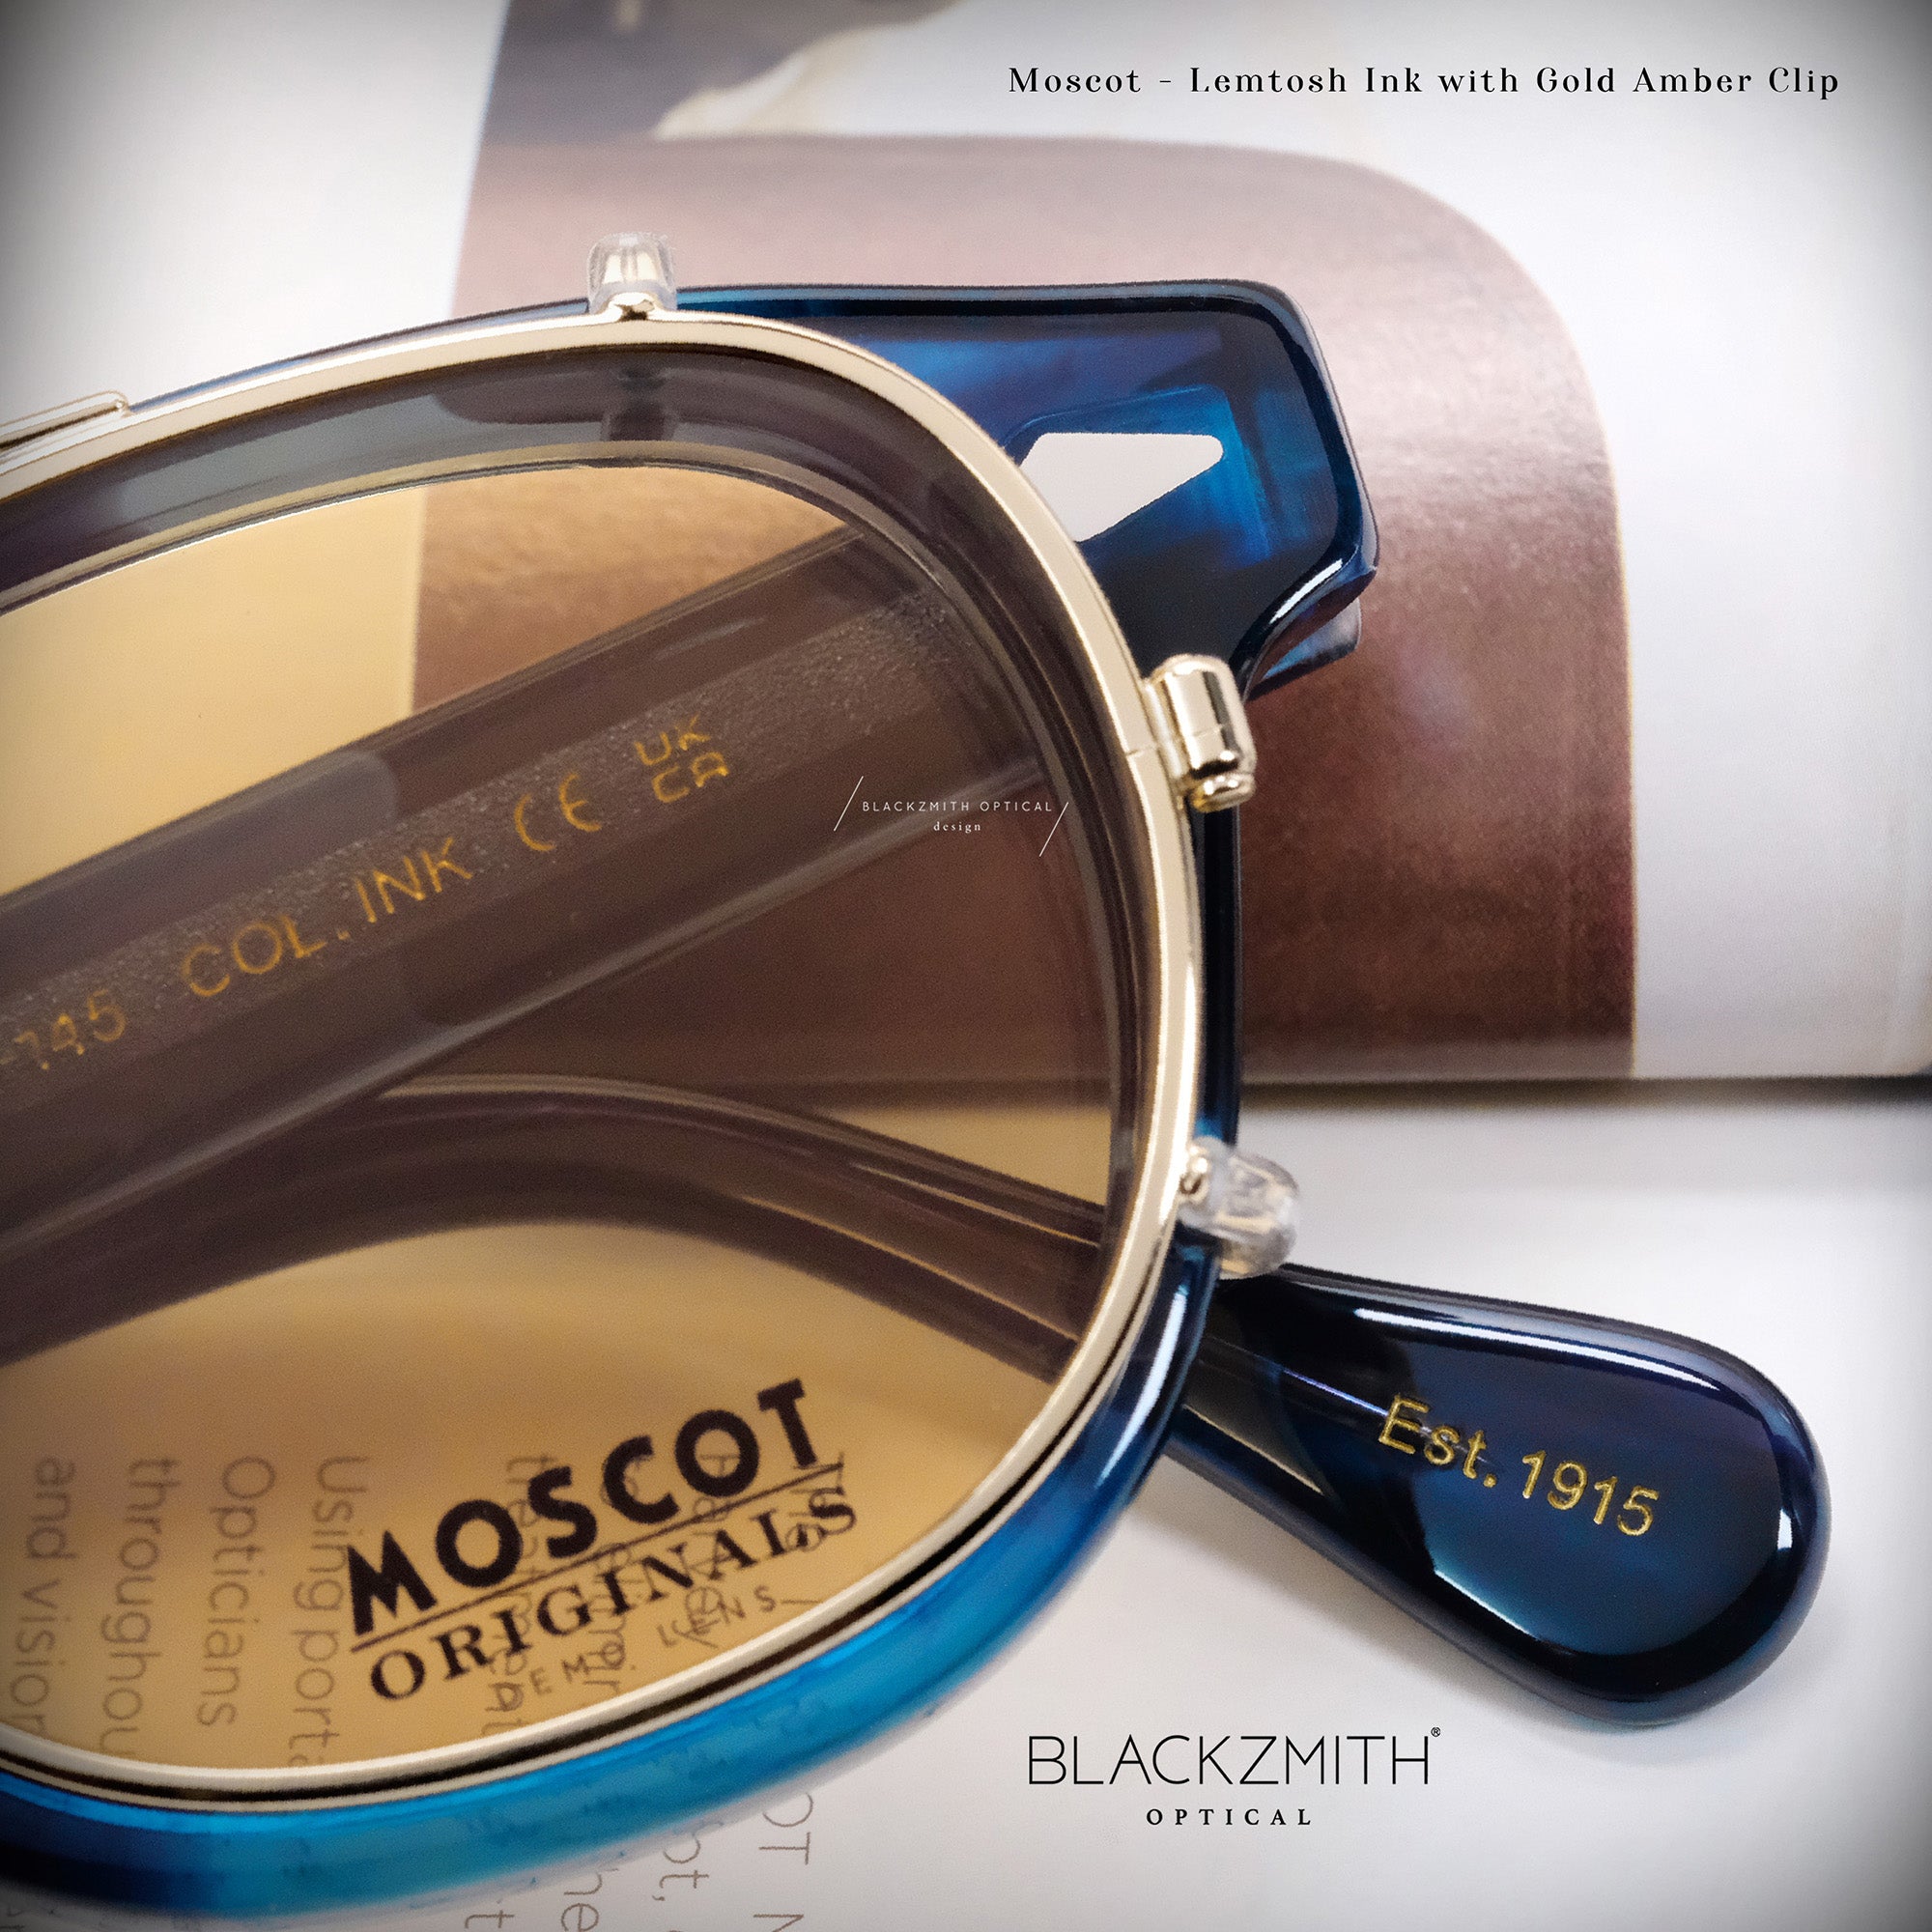 Moscot - Lemtosh Ink